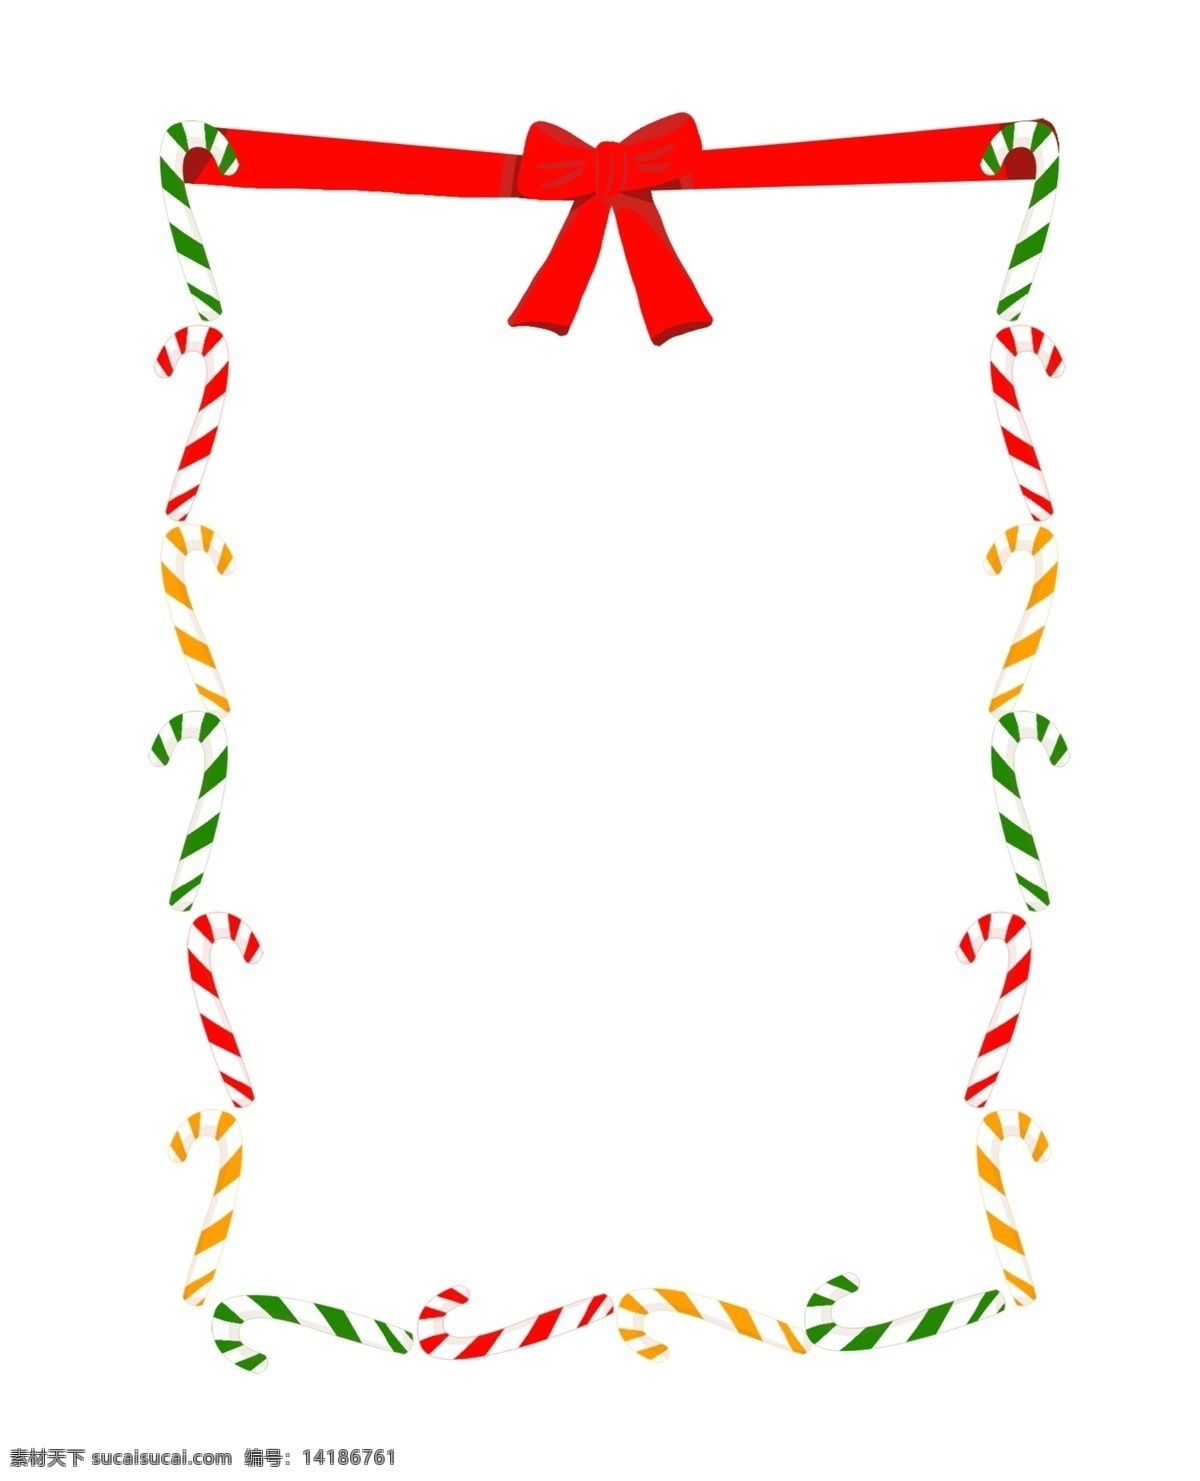 手绘 圣诞 拐杖 边框 圣诞拐杖 彩色拐杖 拐杖边框 边框插画 红色 红色蝴蝶结 手绘拐杖 蝴蝶姐插图